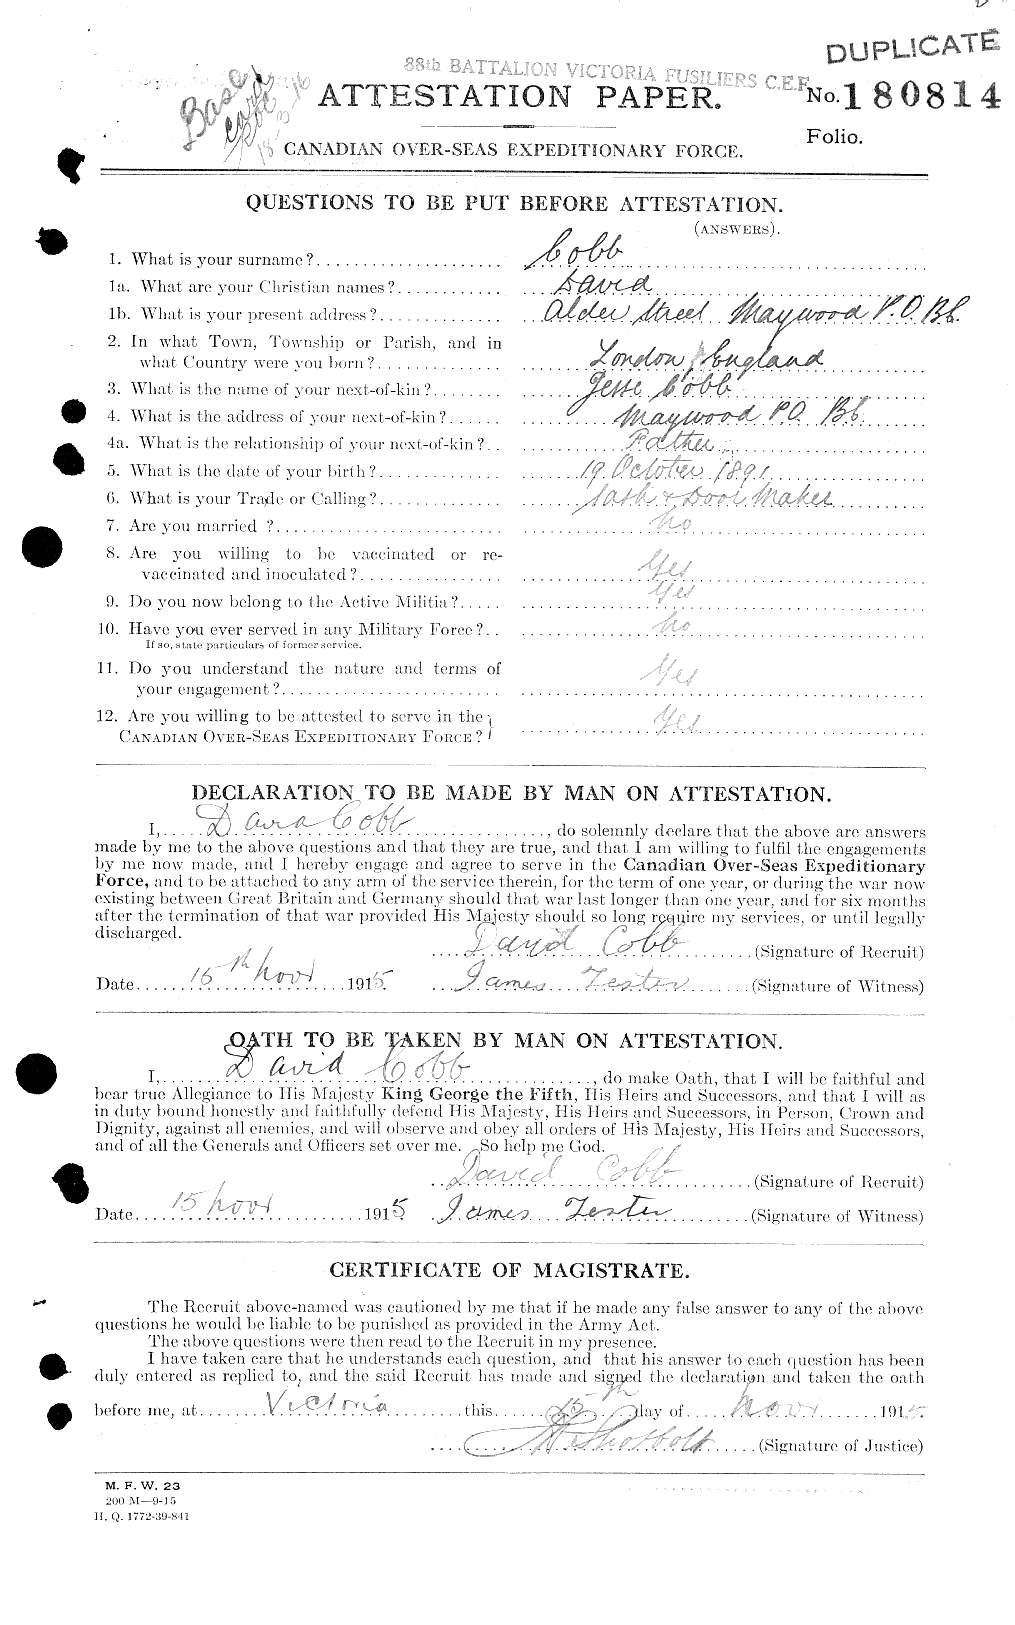 Dossiers du Personnel de la Première Guerre mondiale - CEC 029462a